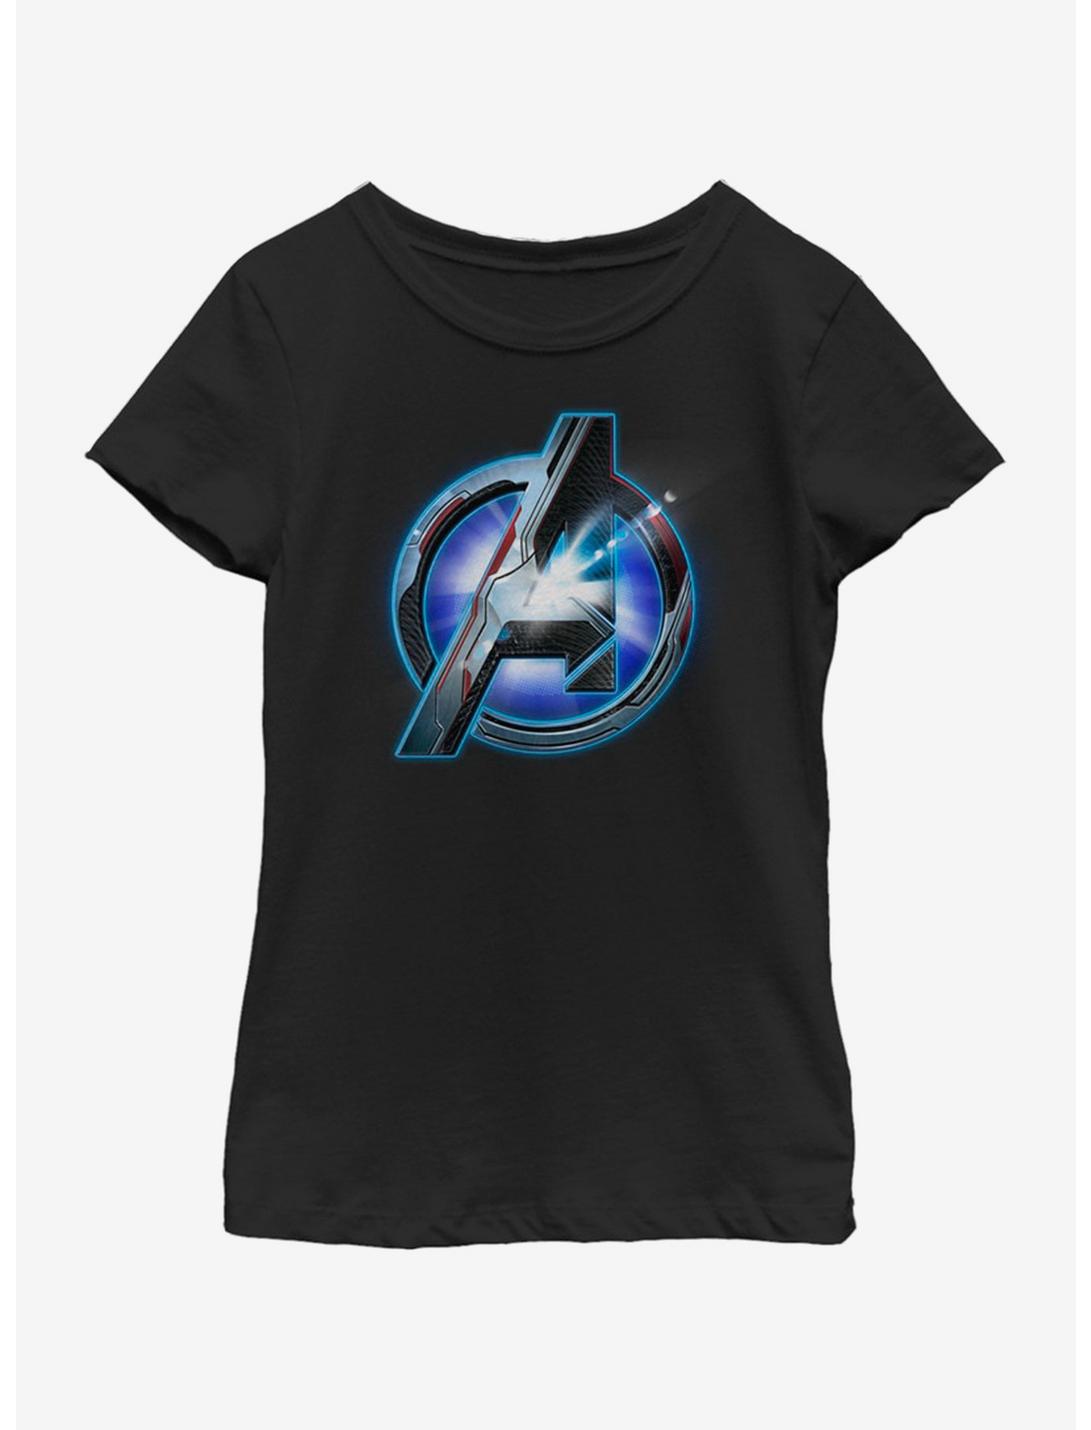 Marvel Avengers: Endgame Tech Logo Youth Girls T-Shirt, BLACK, hi-res